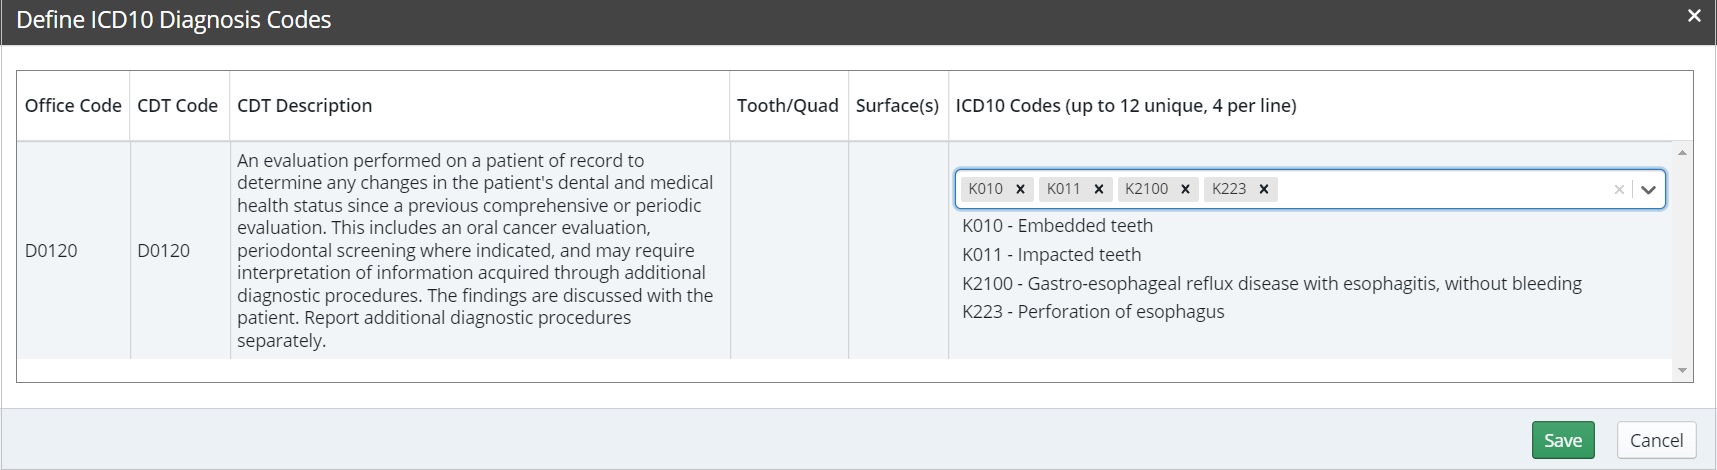 define_ICD10_diag_codes_wndw.jpg